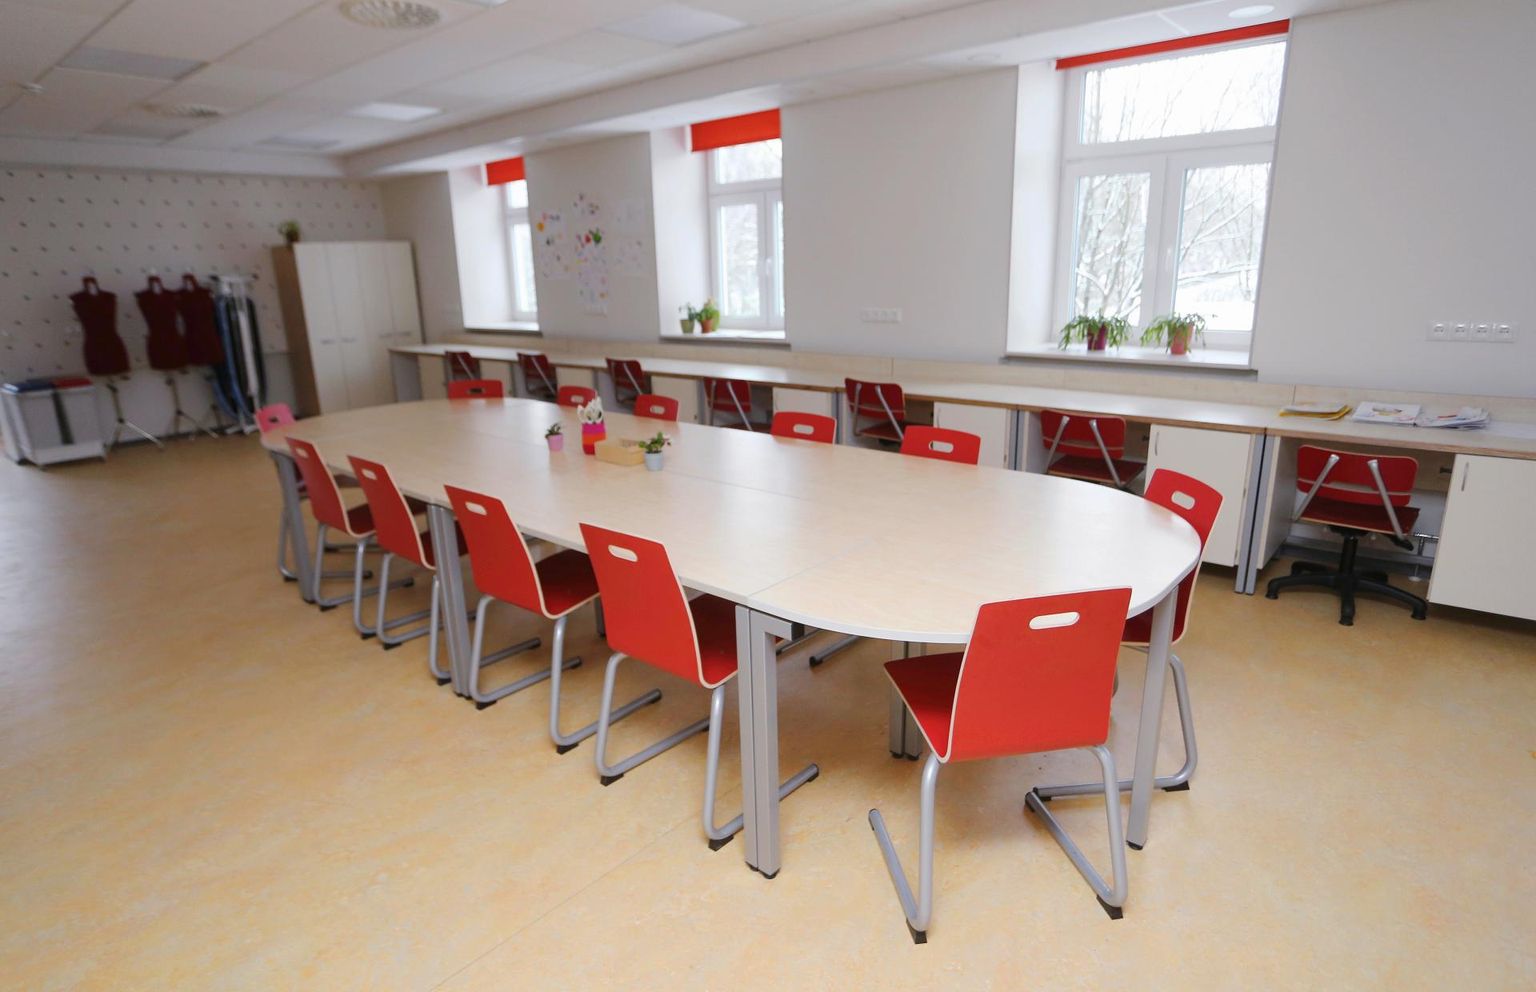 Forseliuse koolil valmisid Tähe 101 kőrvalmajas tööõpetusklassid. Käsitööklassis on aknaseinas lauad, mille all kapis on ootel uhiuued Husqvarna õmblusmasinad.